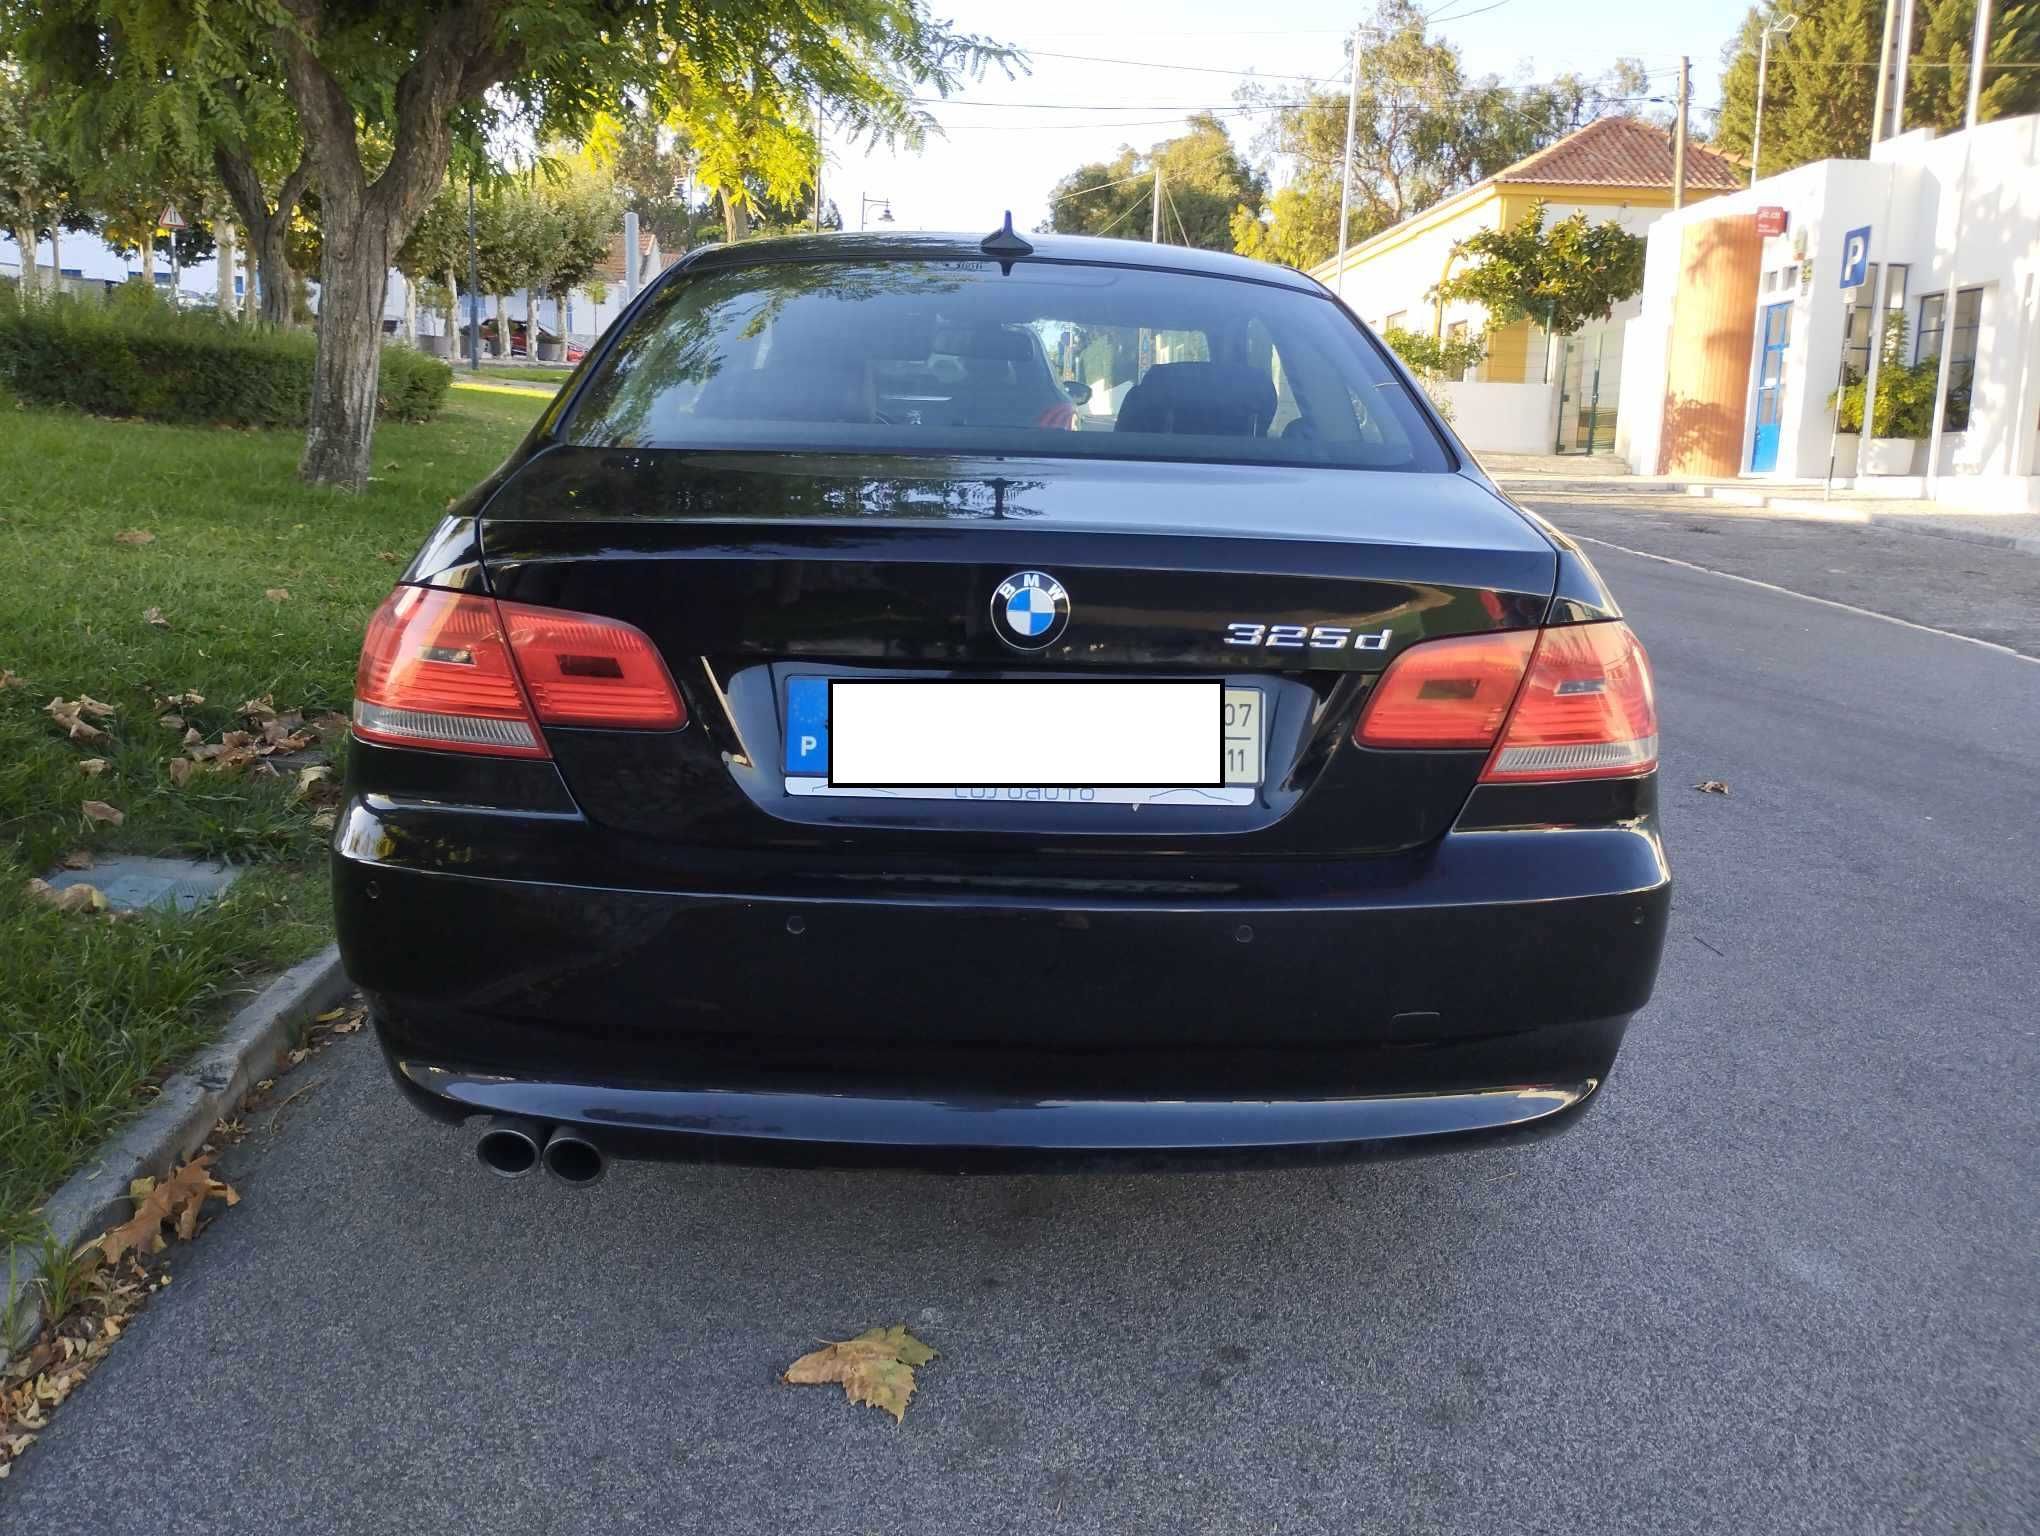 BMW 325d e92 coupe